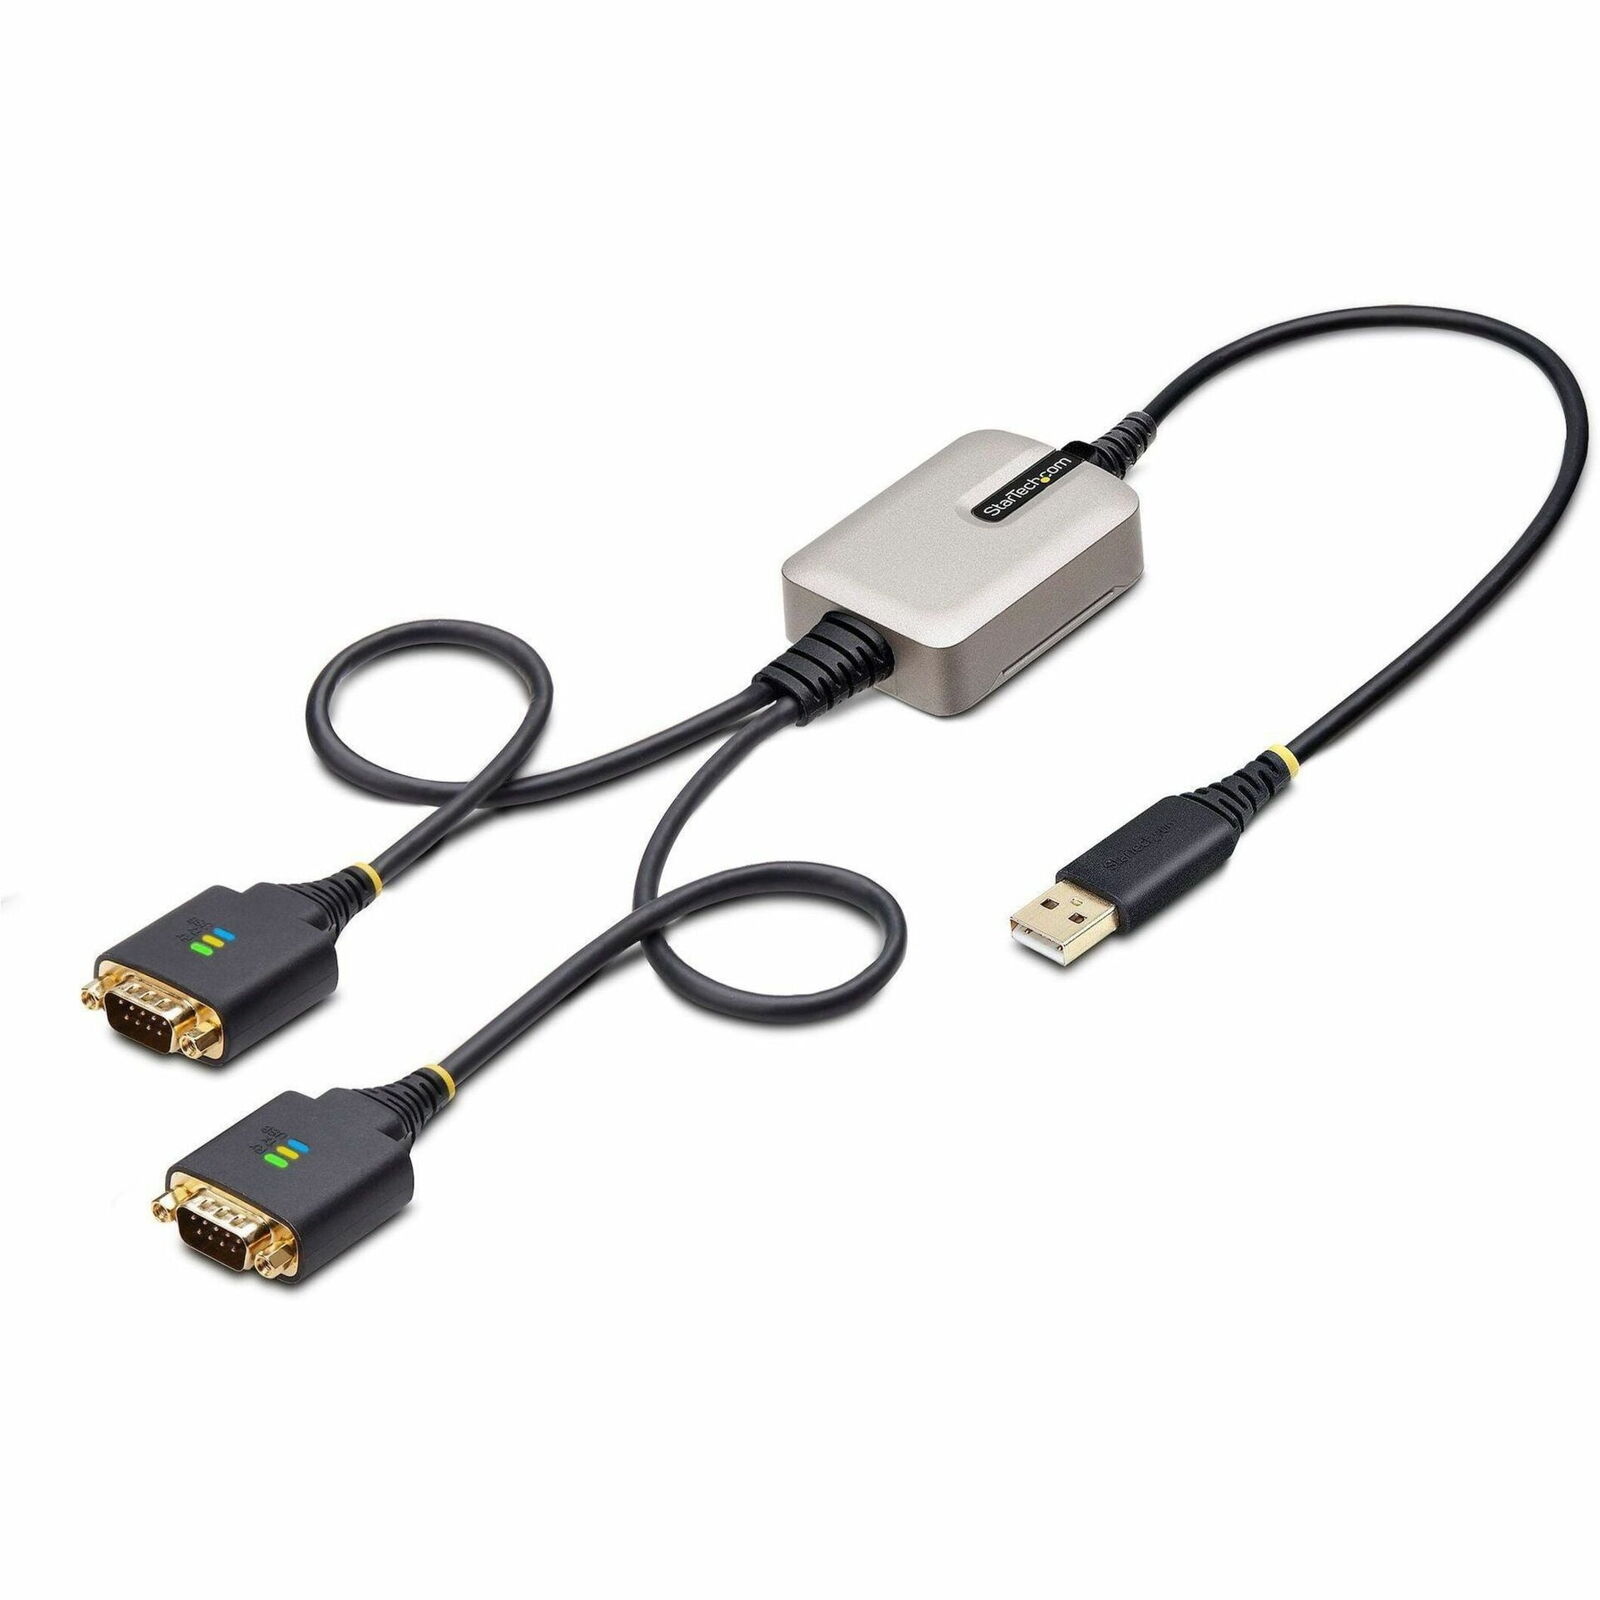 StarTech.com 2ft/60cm 2-Port USB to Serial Adapter Cable, COM Retention, FTDI,